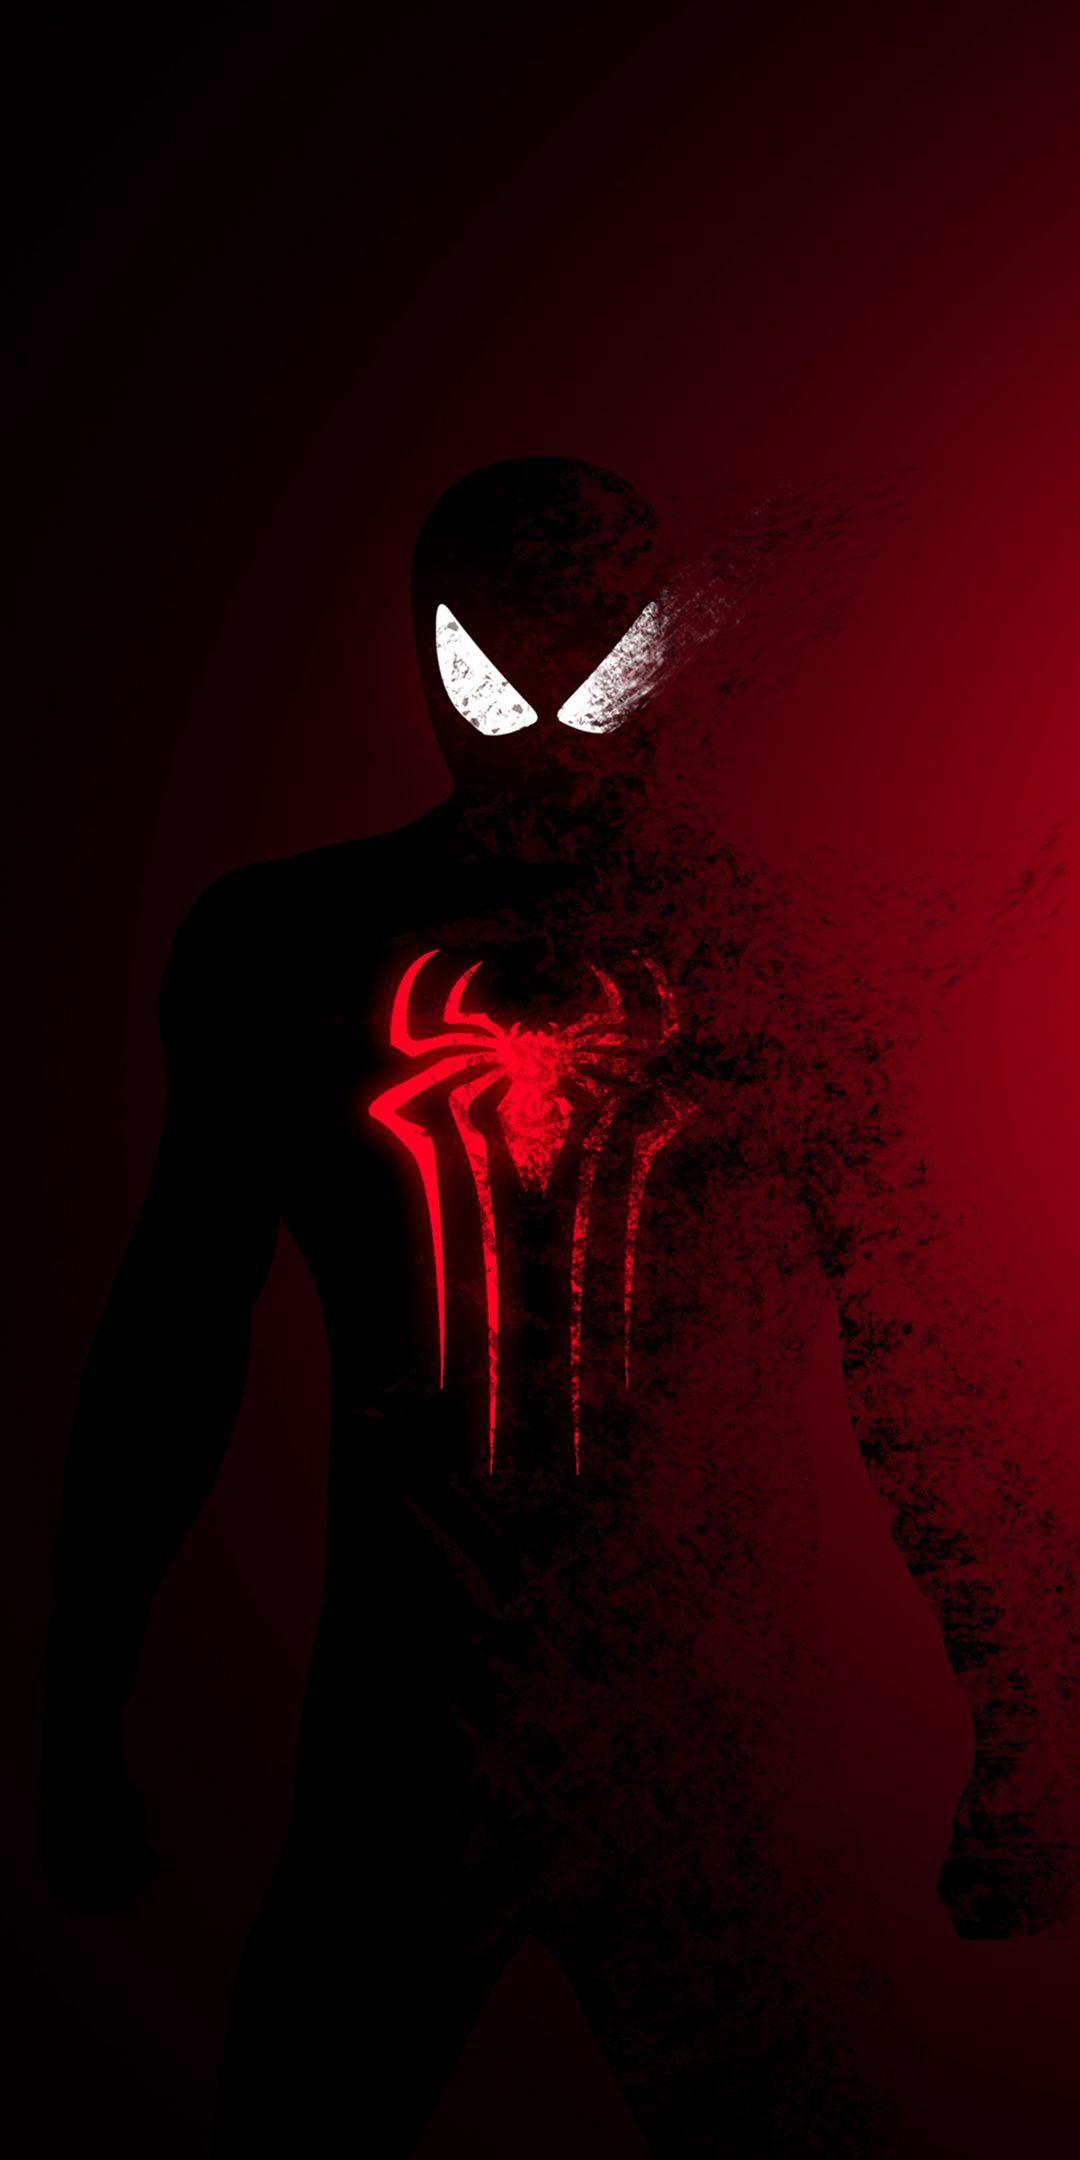 Spider Man Dark wallpaper by raman19925  Download on ZEDGE  67b6